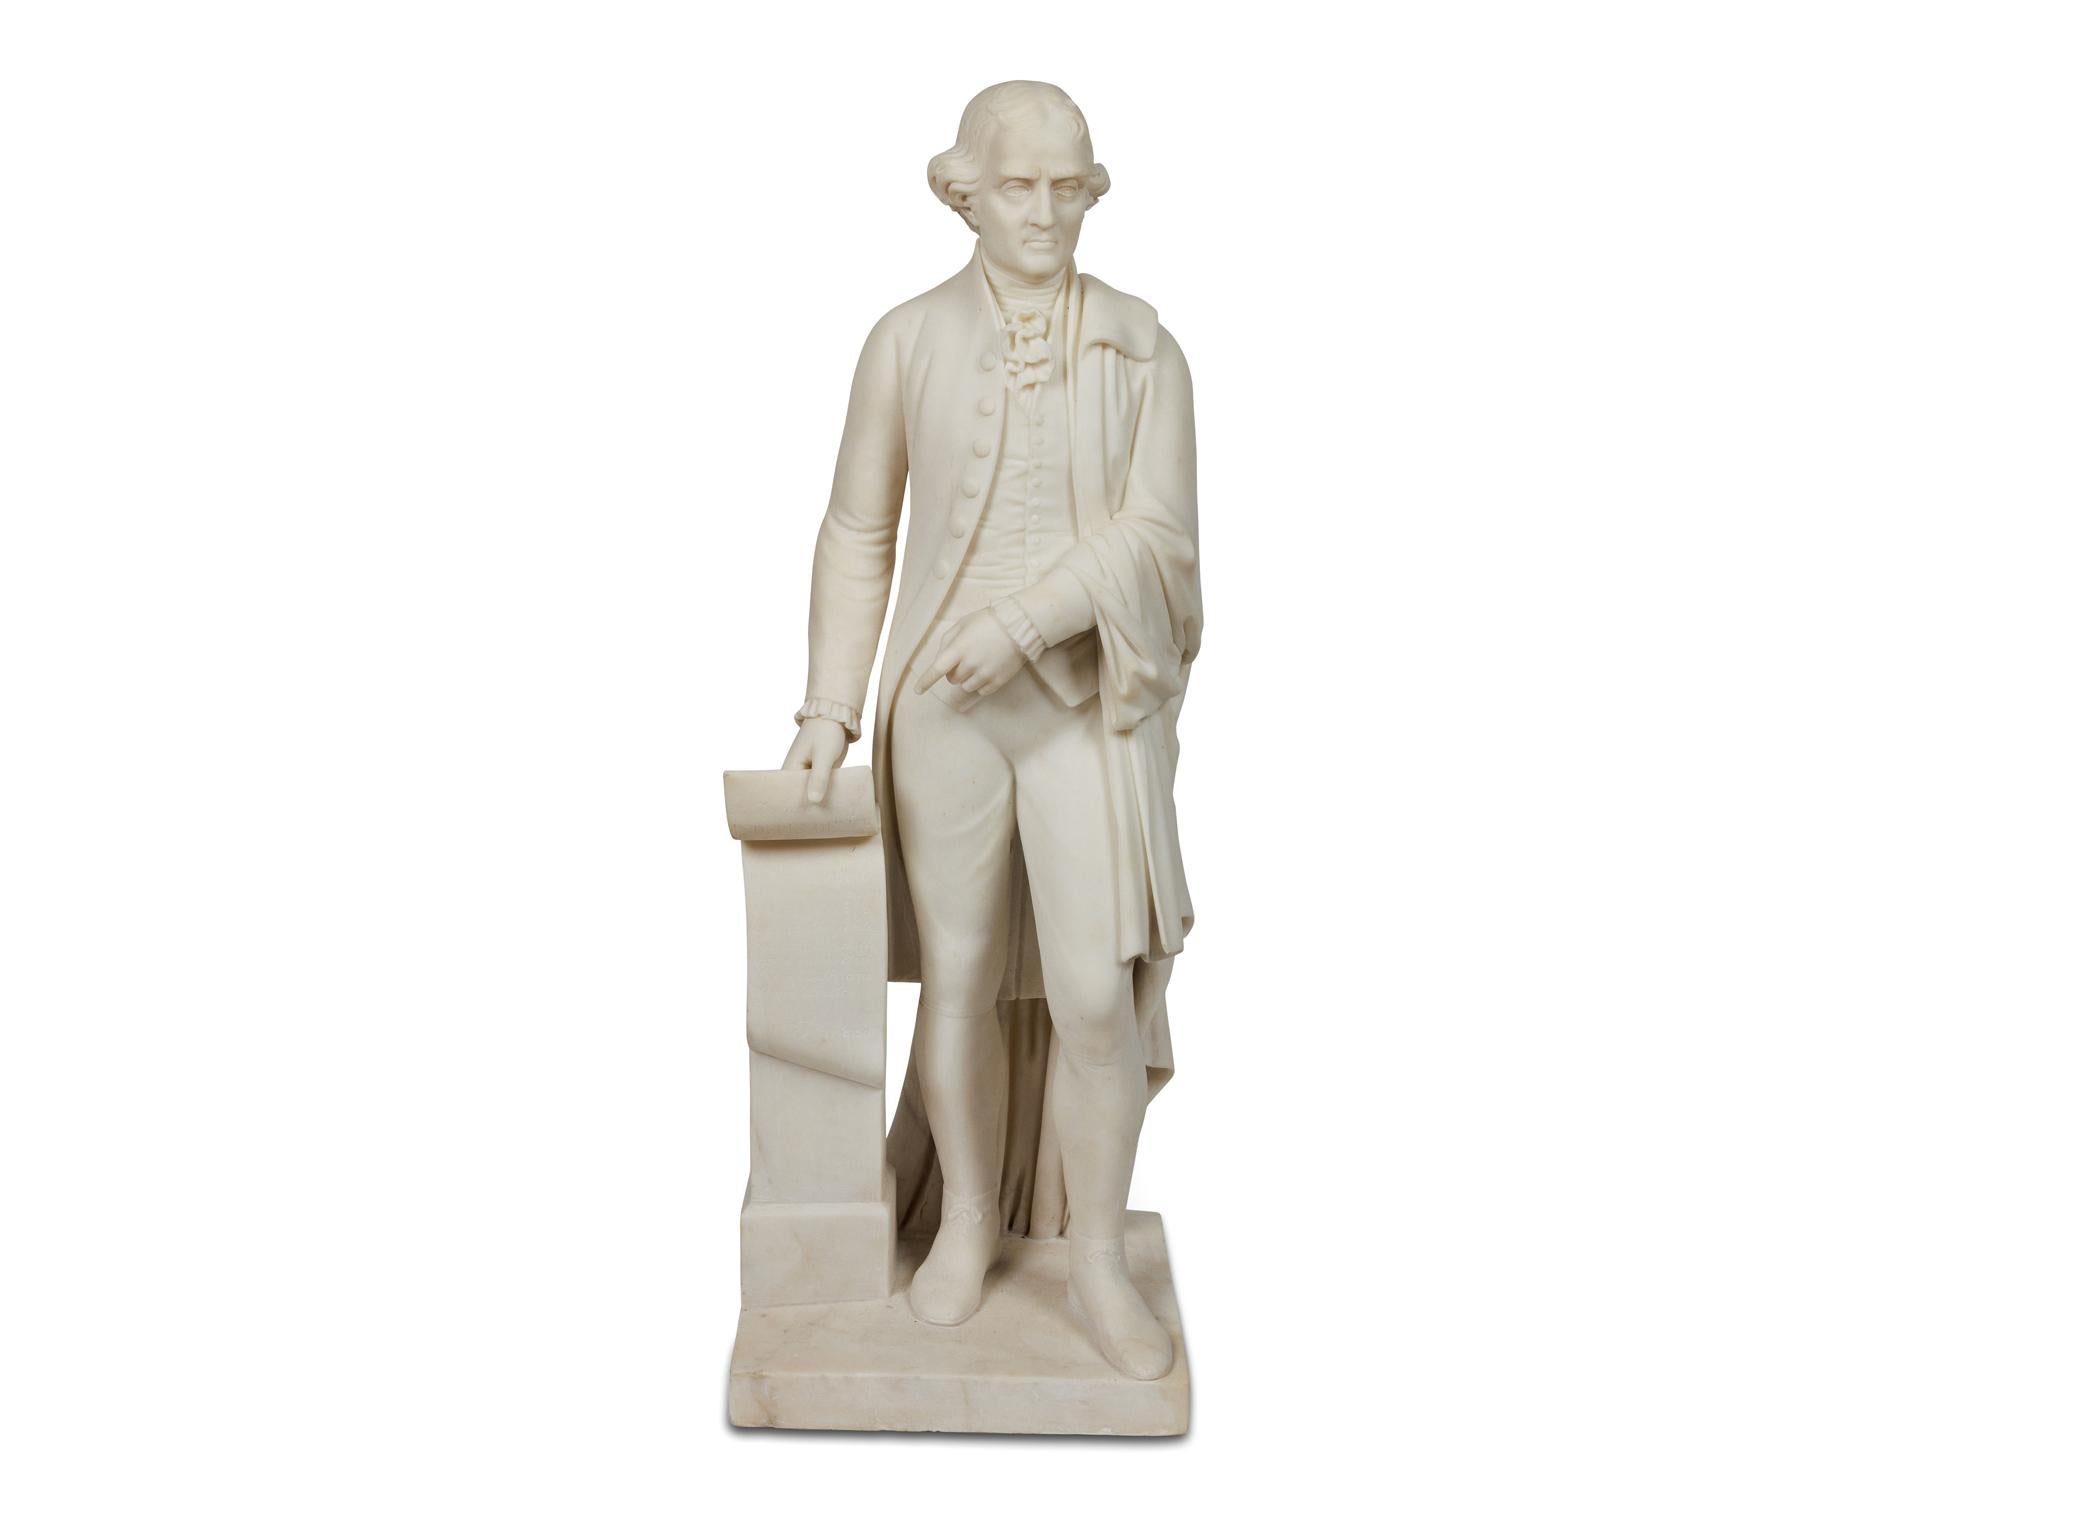 Rare et importante sculpture américaine en marbre de Thomas Jefferson, datant d'environ 1870 - Sculpture de Unknown